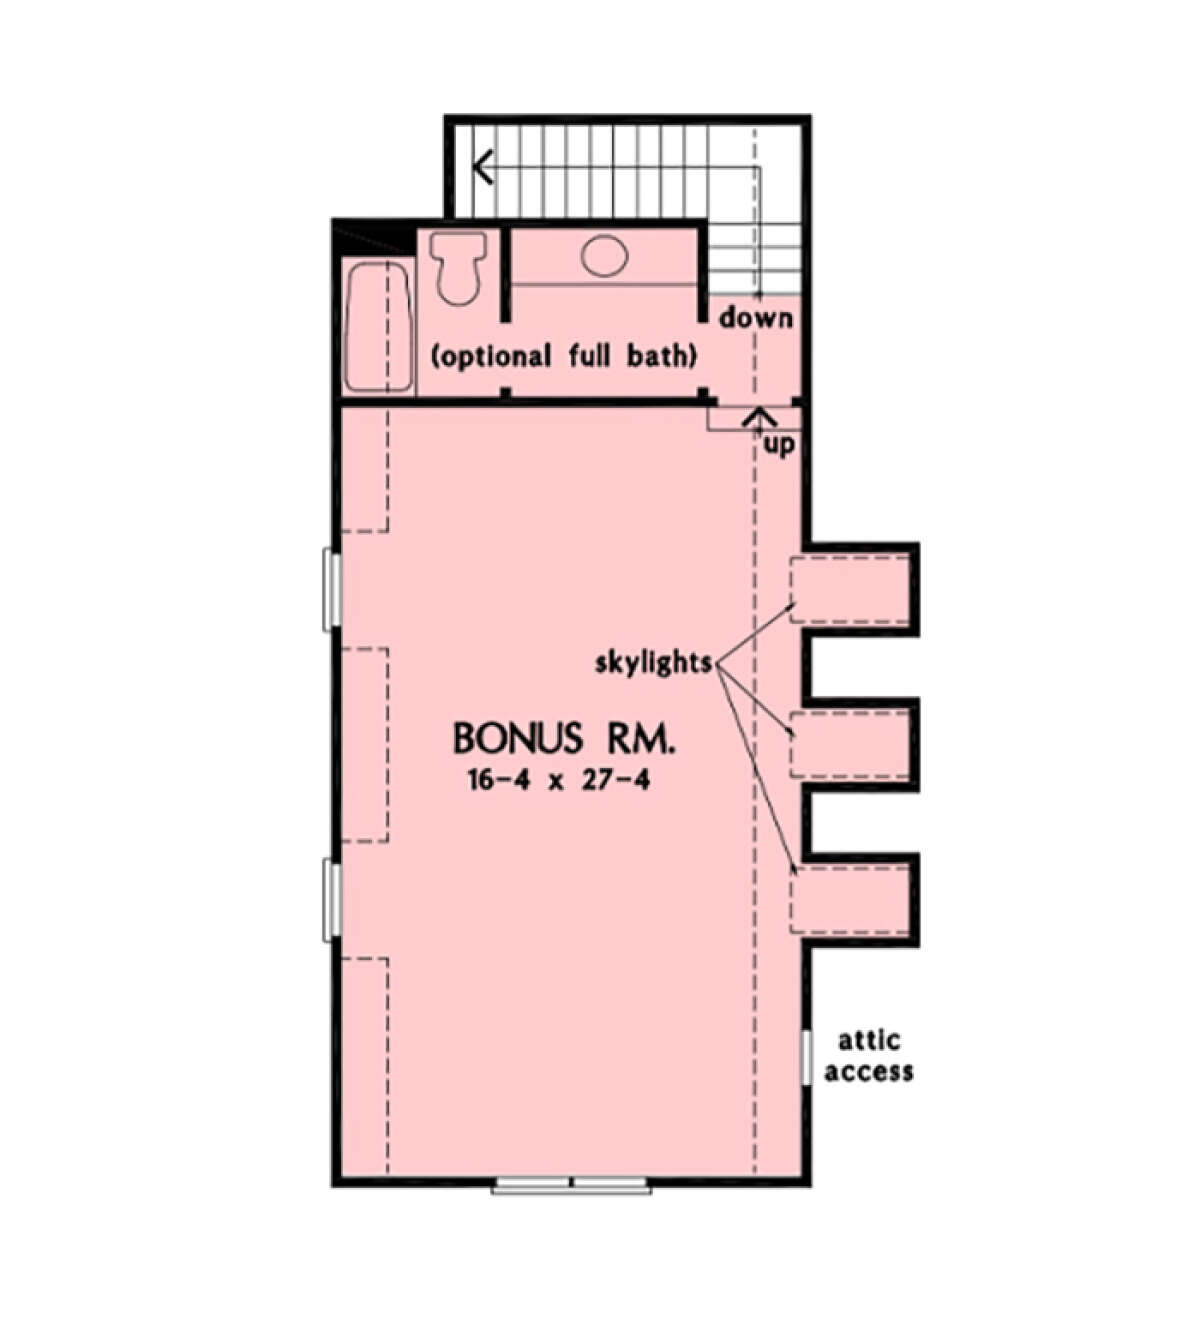 Bonus Room for House Plan #2865-00301